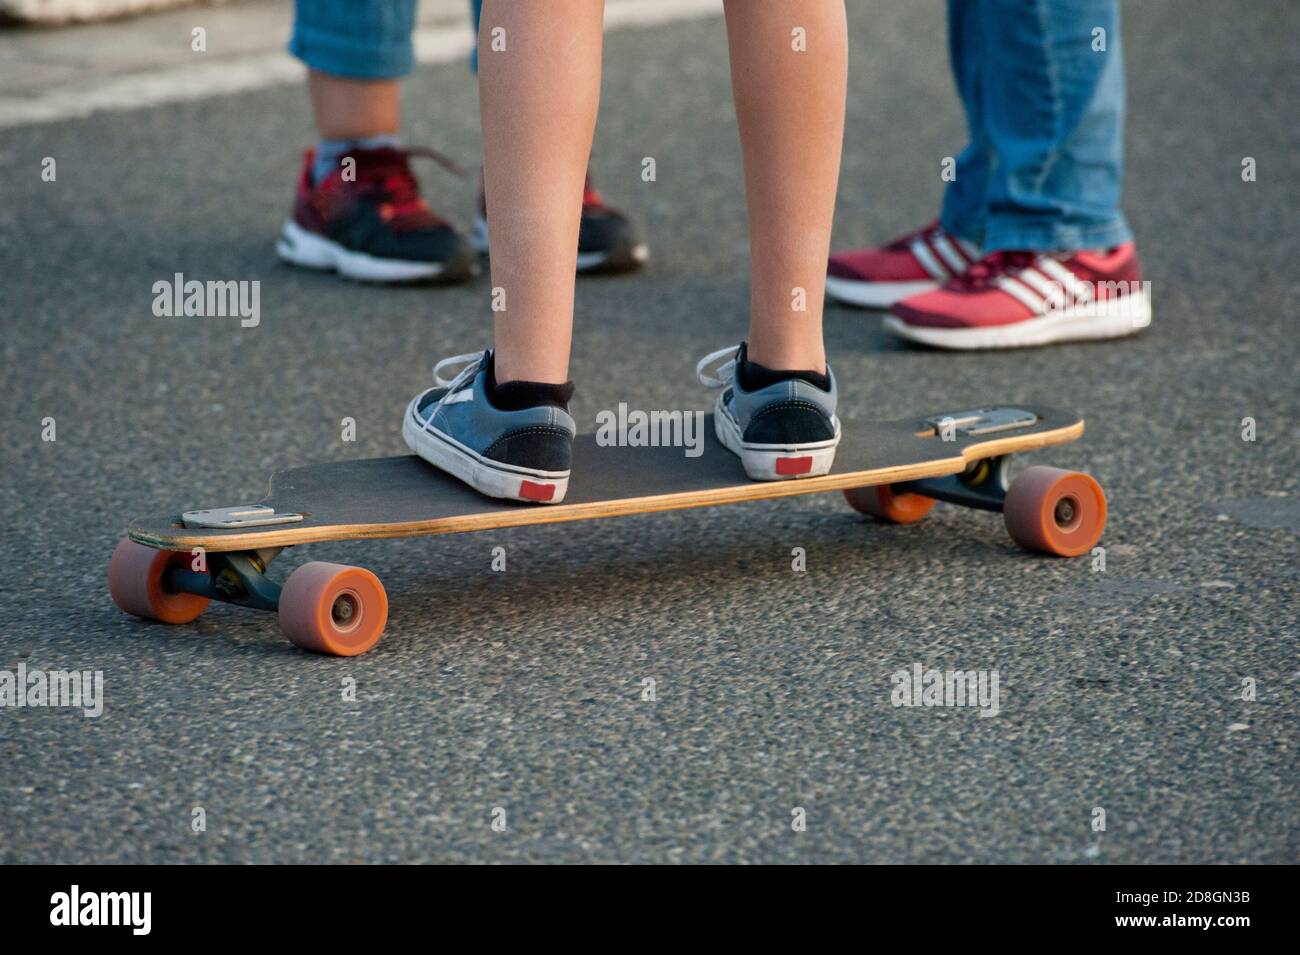 Boy Reiten ein Skateboard, auf der Straße glatten Boden, Beine mit  Sportschuhen Stockfotografie - Alamy